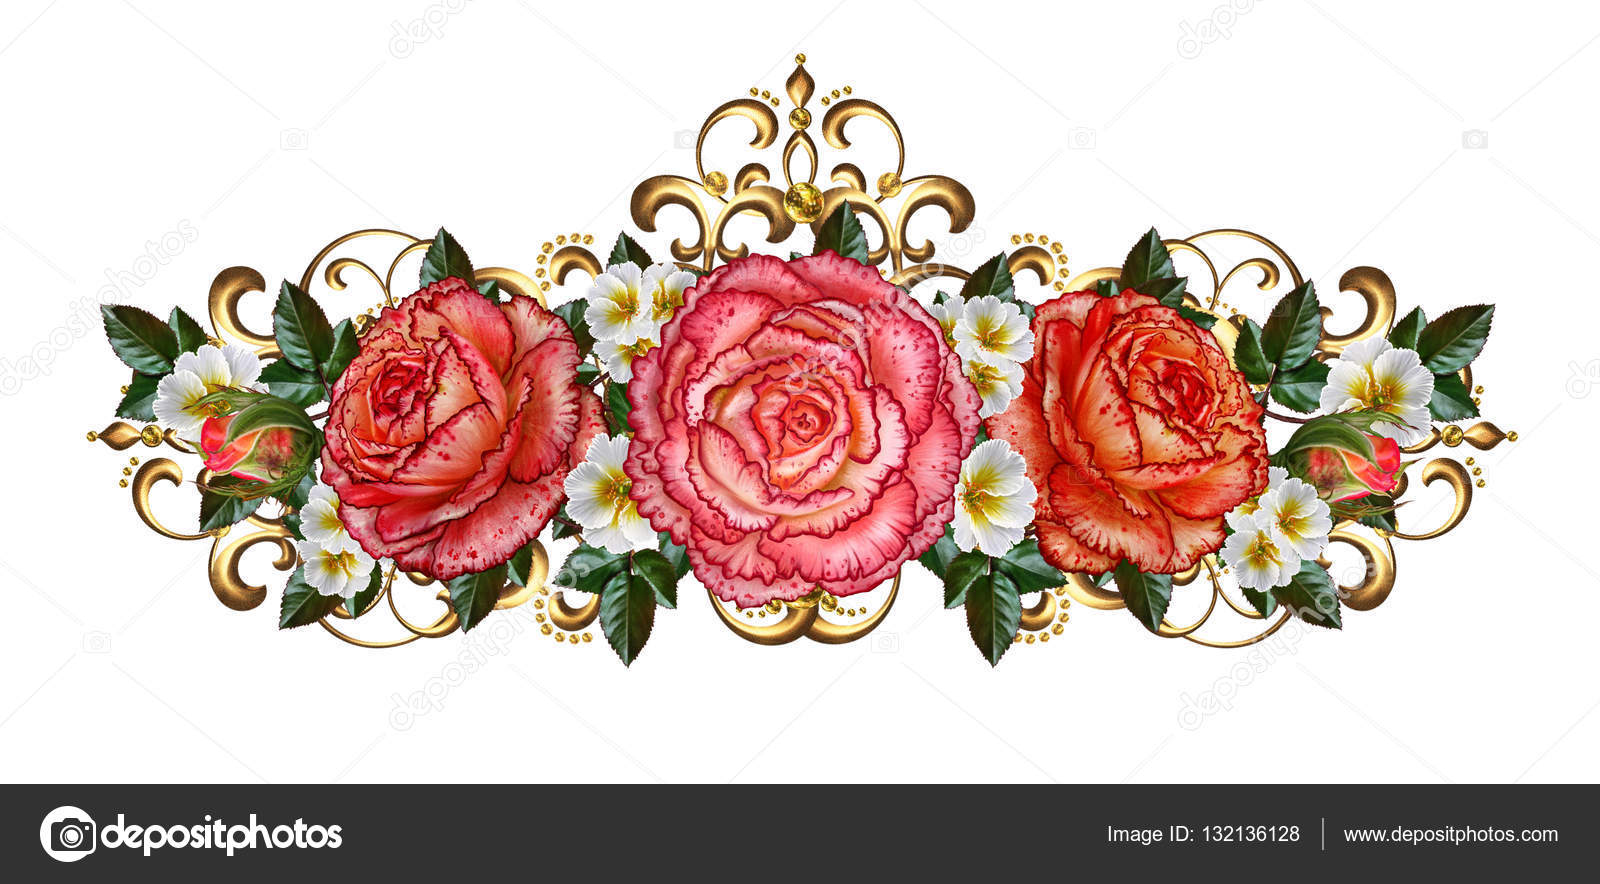 Guirnaldas de flores de rosas naranjas y flores blancas, rizos brillantes,  trenzado de oro calado. Estilo vintage antiguo. Aislado sobre fondo blanco  .: fotografía de stock © sokolova_ #132136128 | Depositphotos